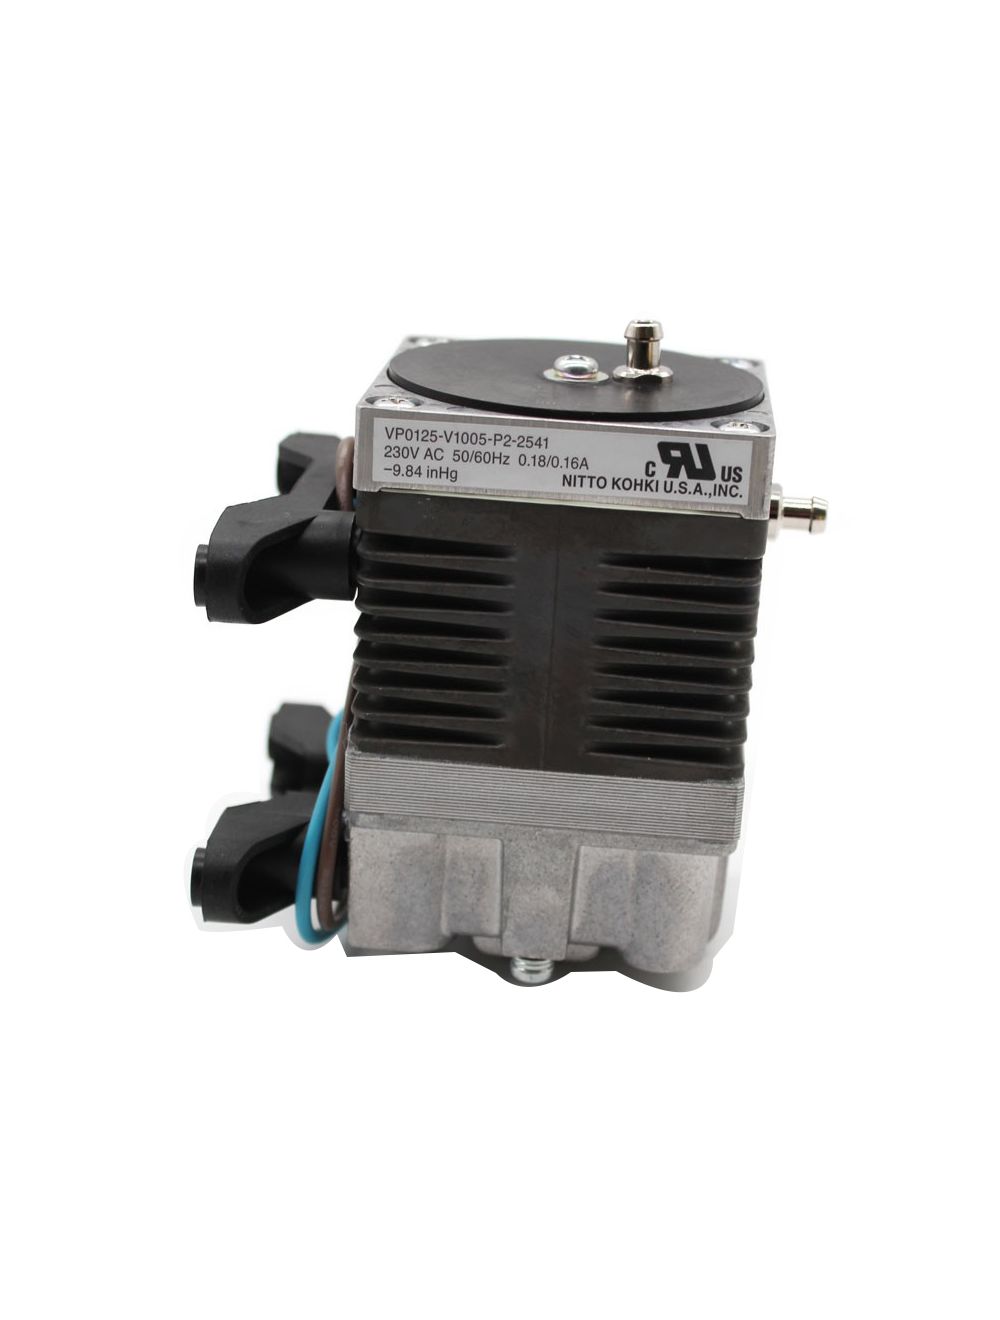 New In stock for sale, Nitto Kohki Vacuum Pump VP0125-V1005-P2-2541